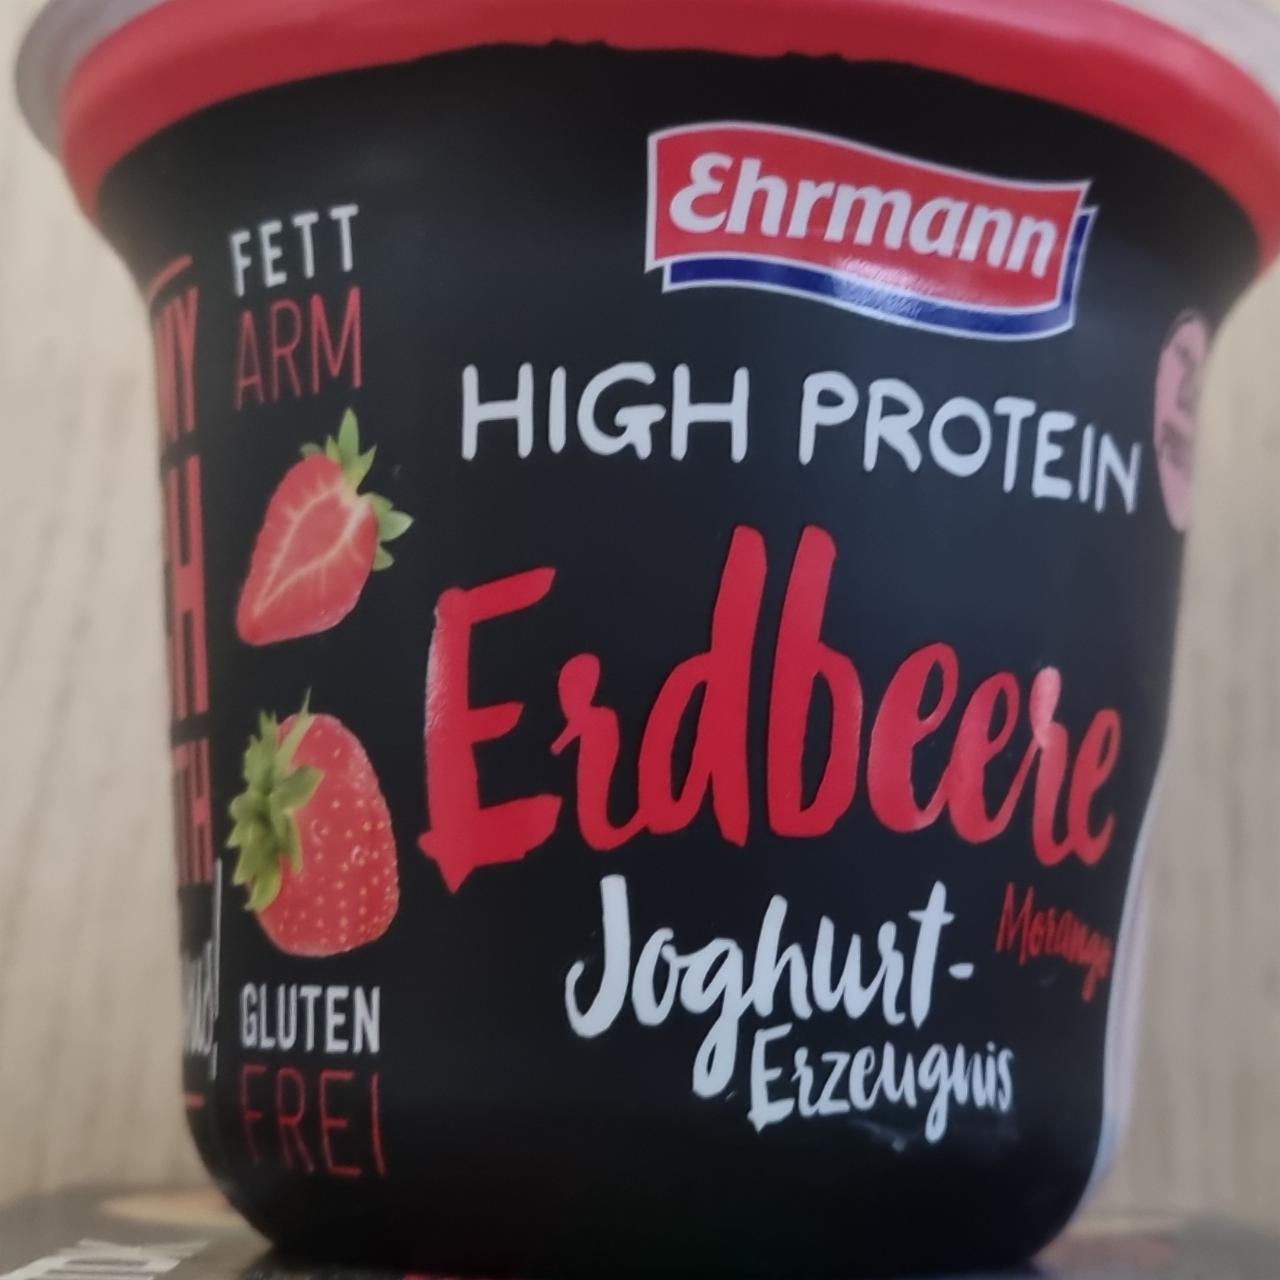 Fotografie - High protein Erdbeere Joghurt Ehrmann